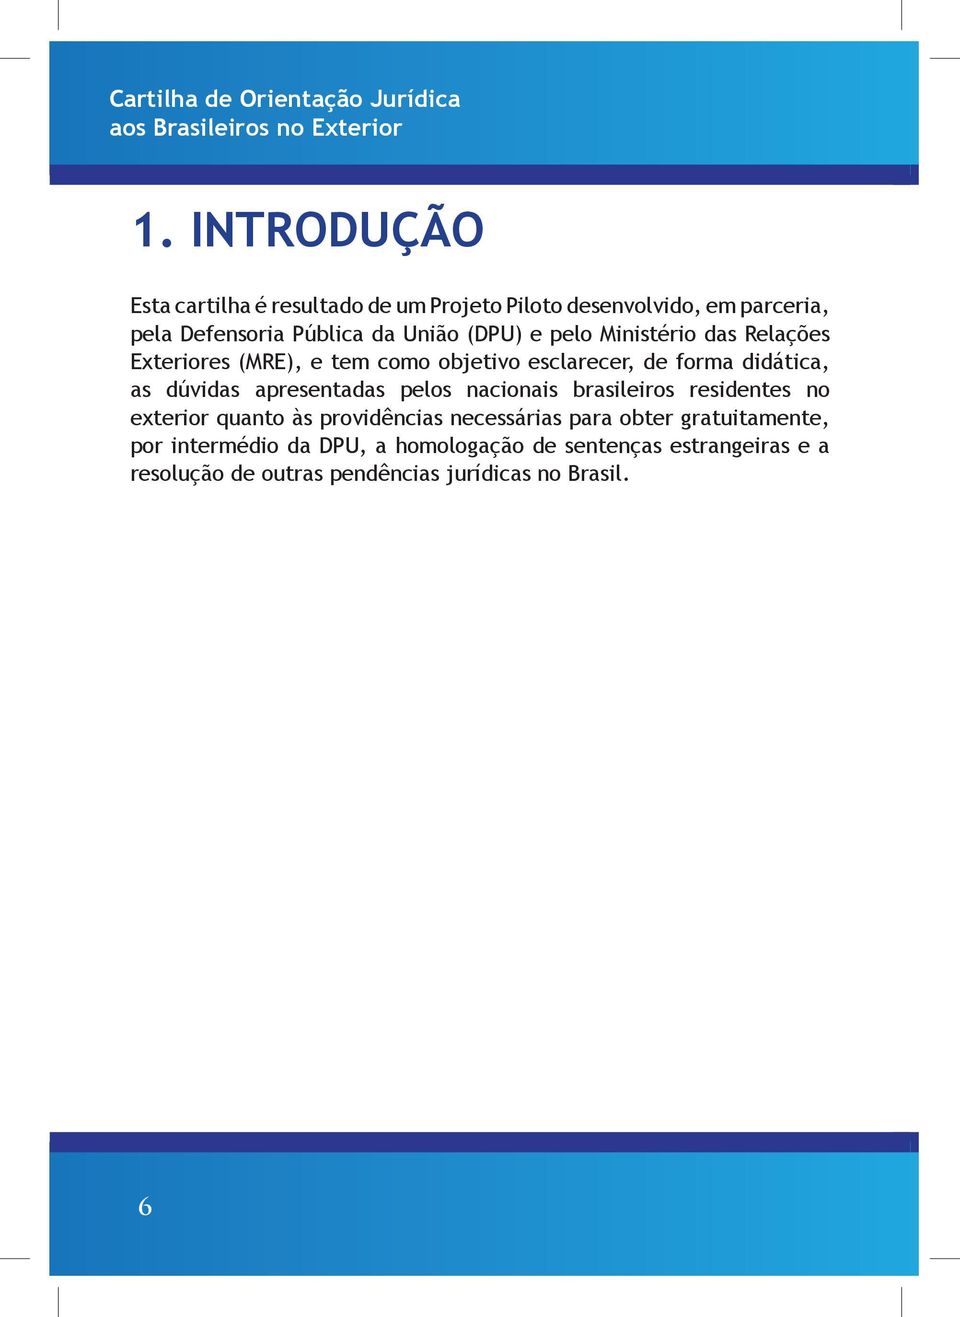 apresentadas pelos nacionais brasileiros residentes no exterior quanto às providências necessárias para obter